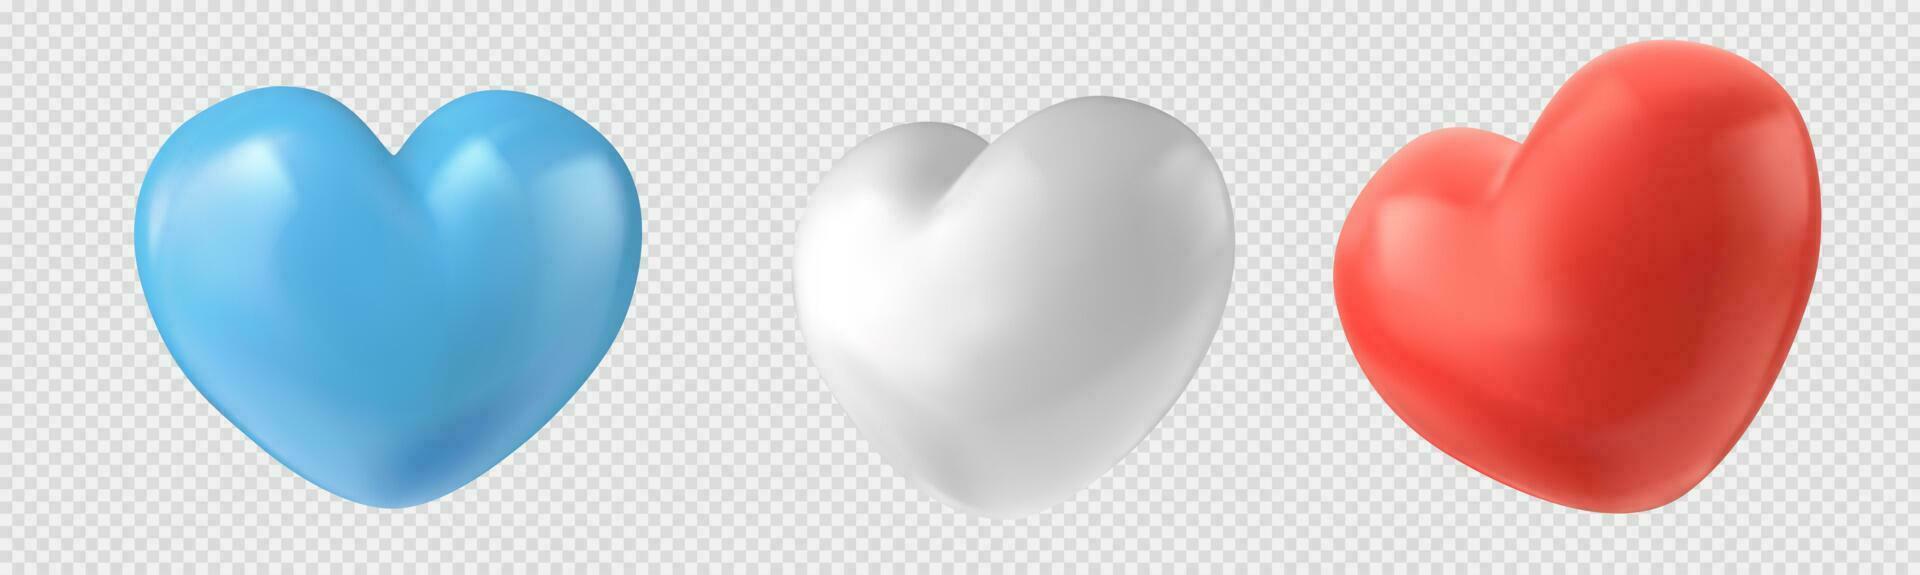 3d liefde symbolen, hart vorm ballonnen vector